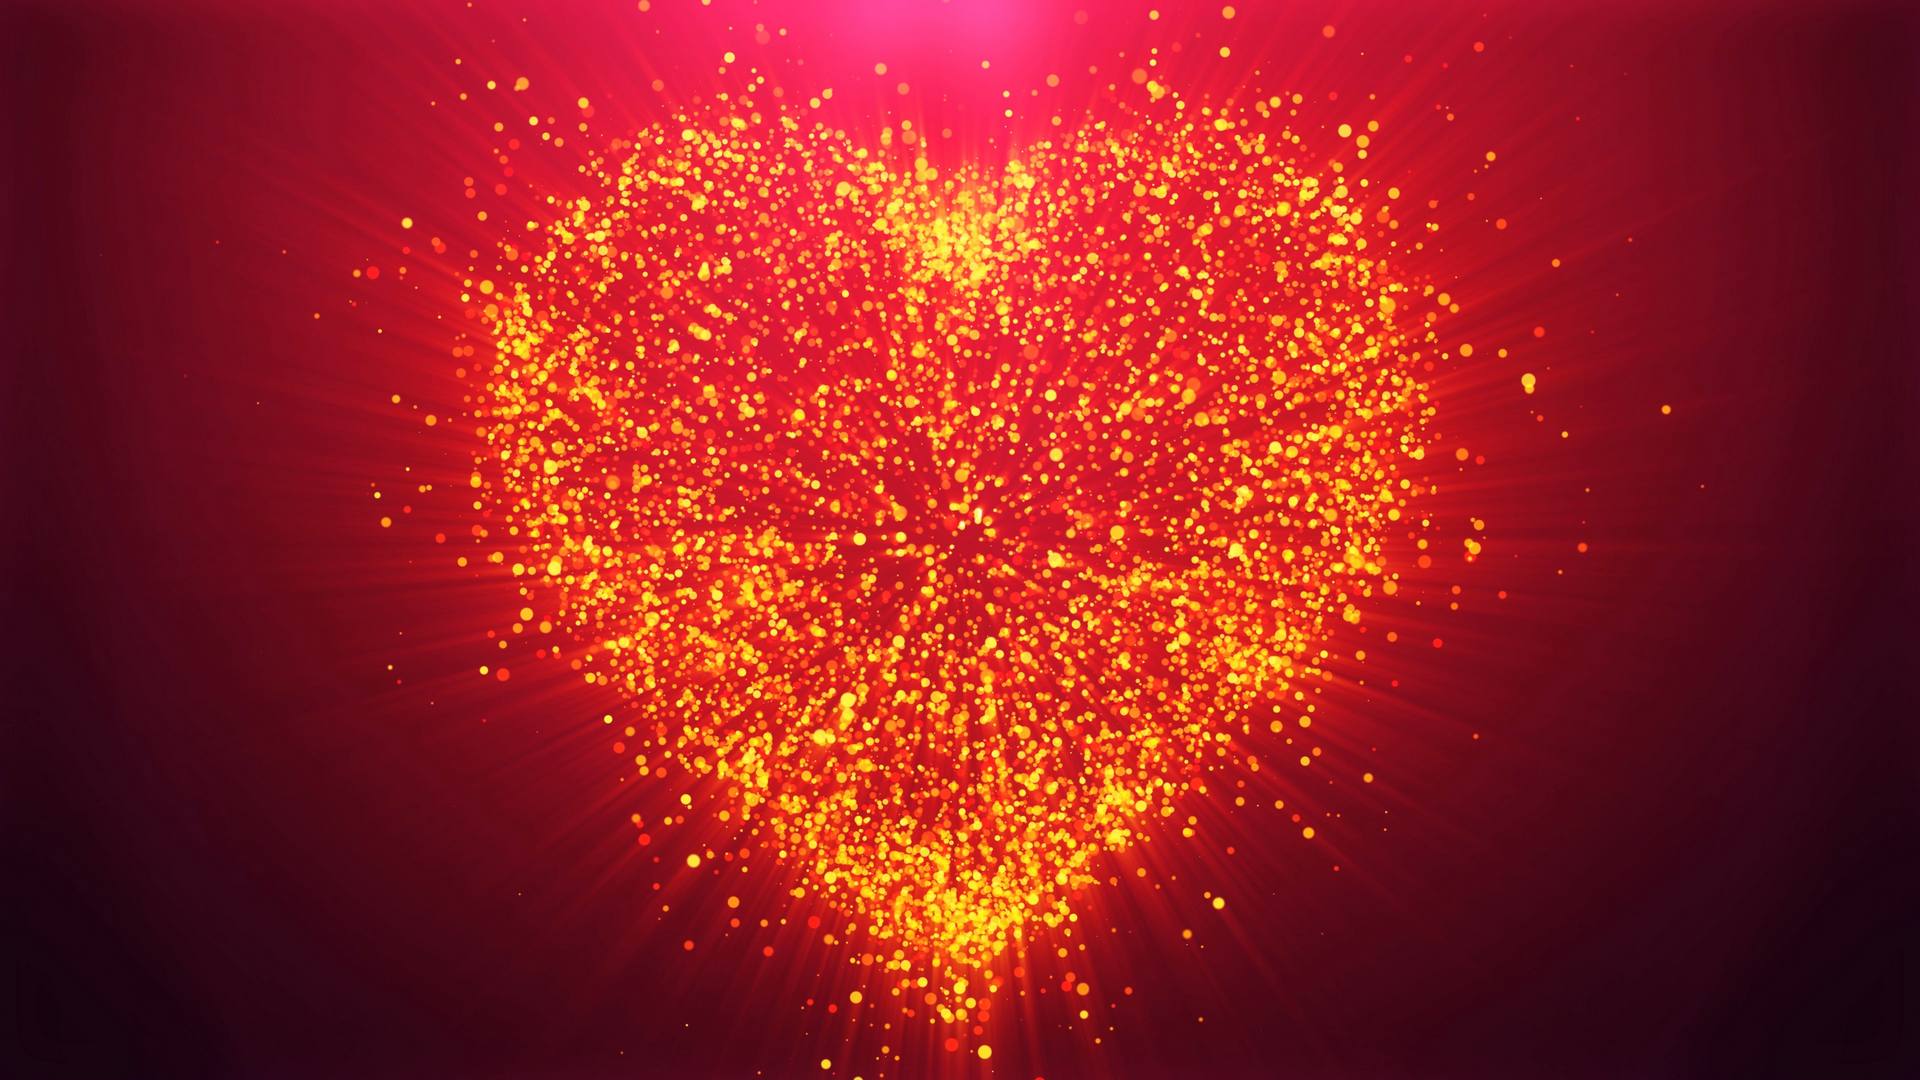 Сердце из частиц на День святого Валентина.jpg